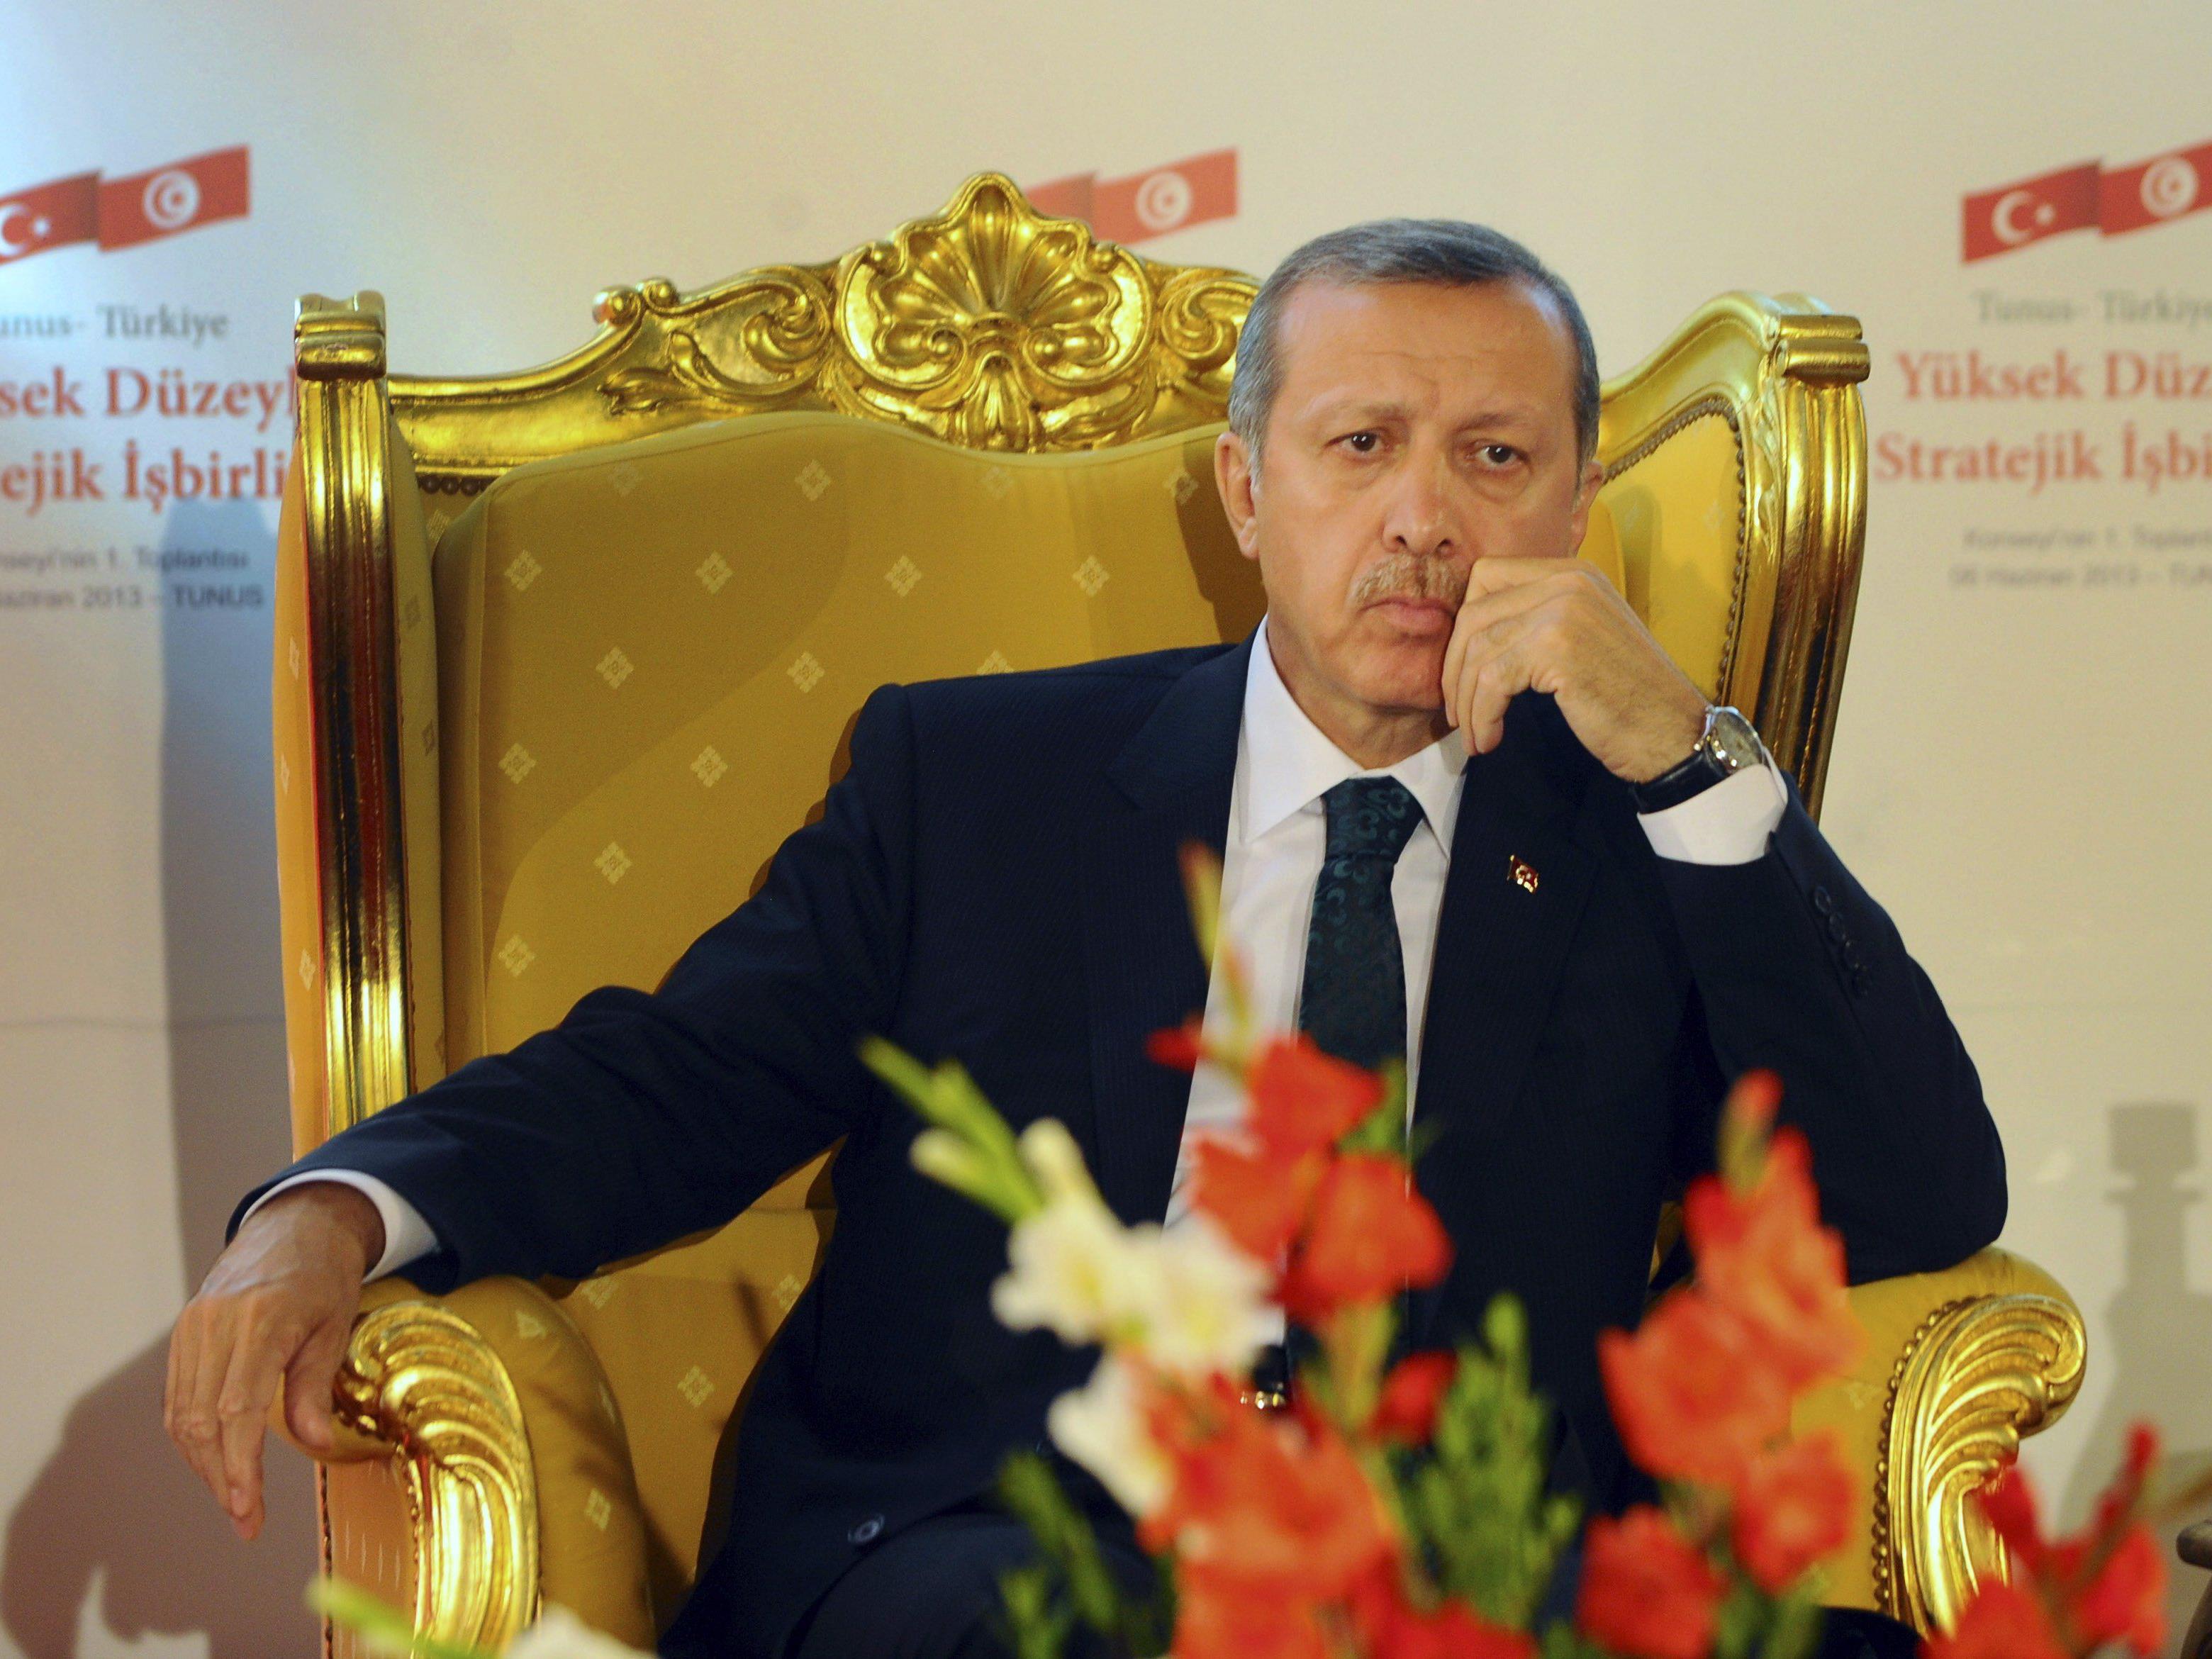 "In der Türkei und der Welt behaupten das viele renommierte Gelehrte".